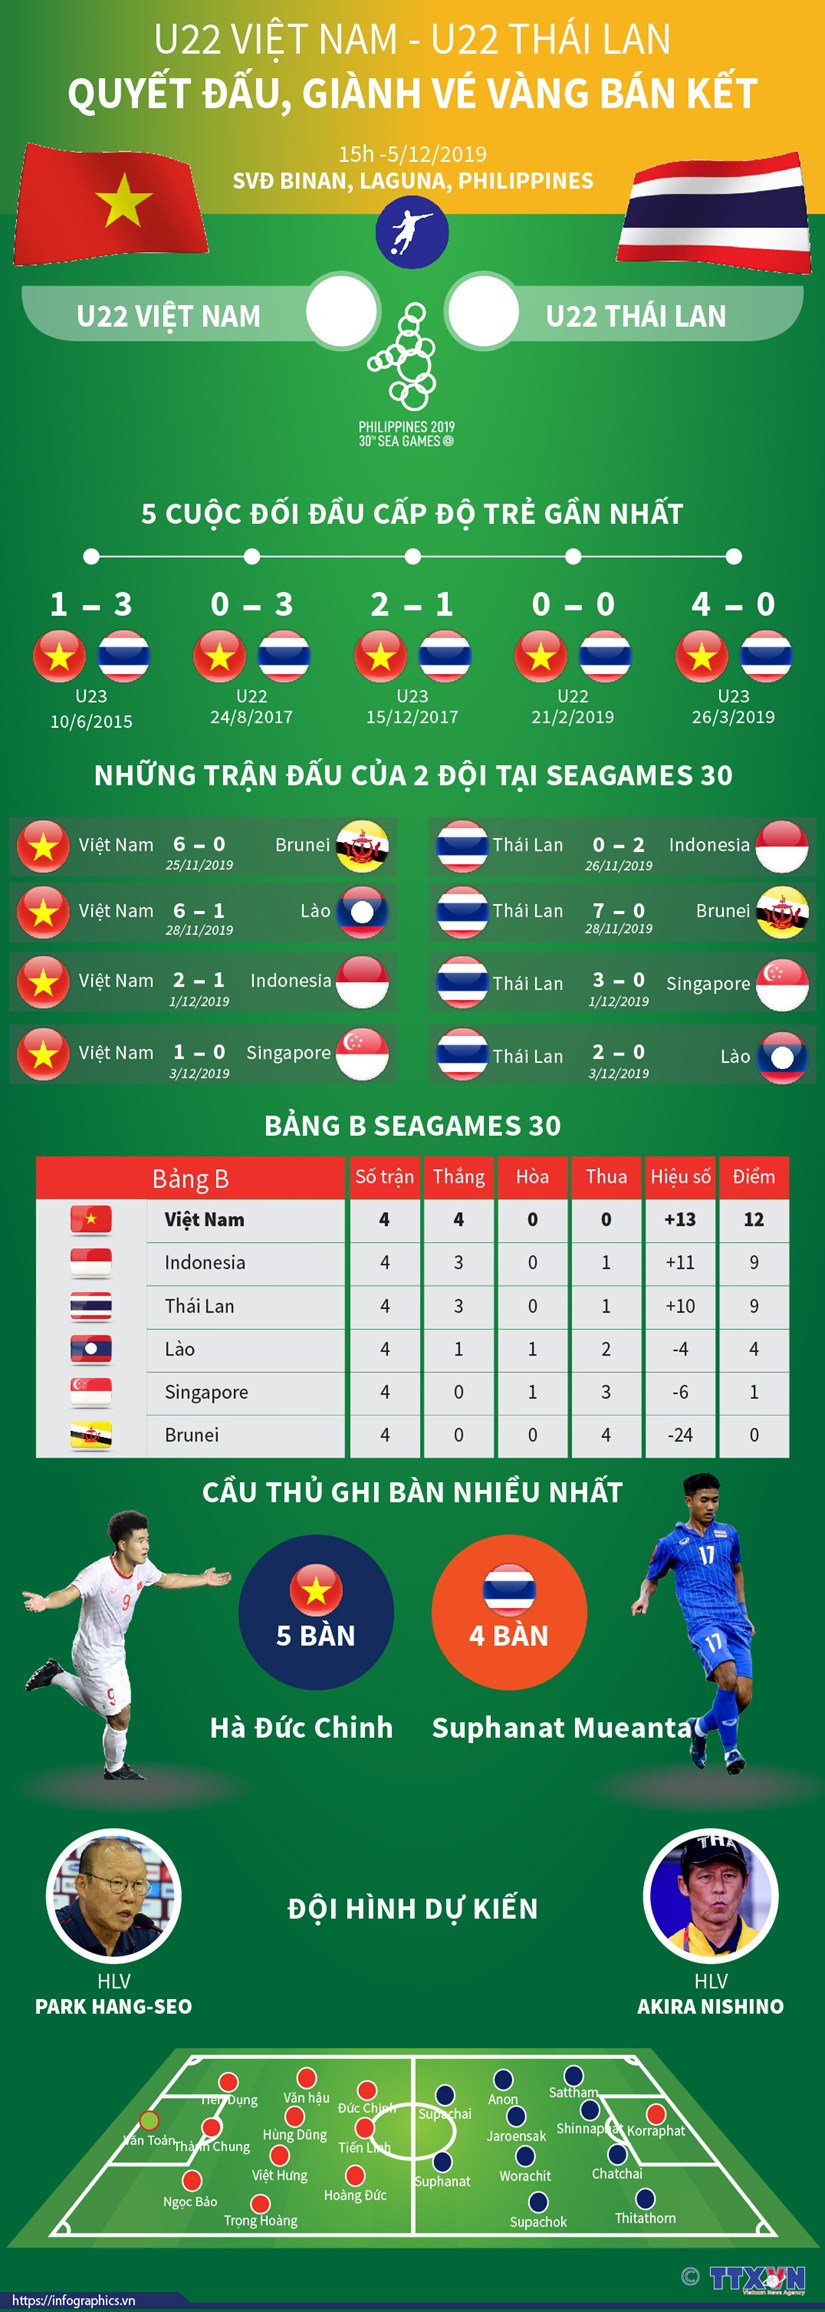 [Infographics] U22 Viet Nam-U22 Thai Lan: Quyet dau gianh ve ban ket hinh anh 1